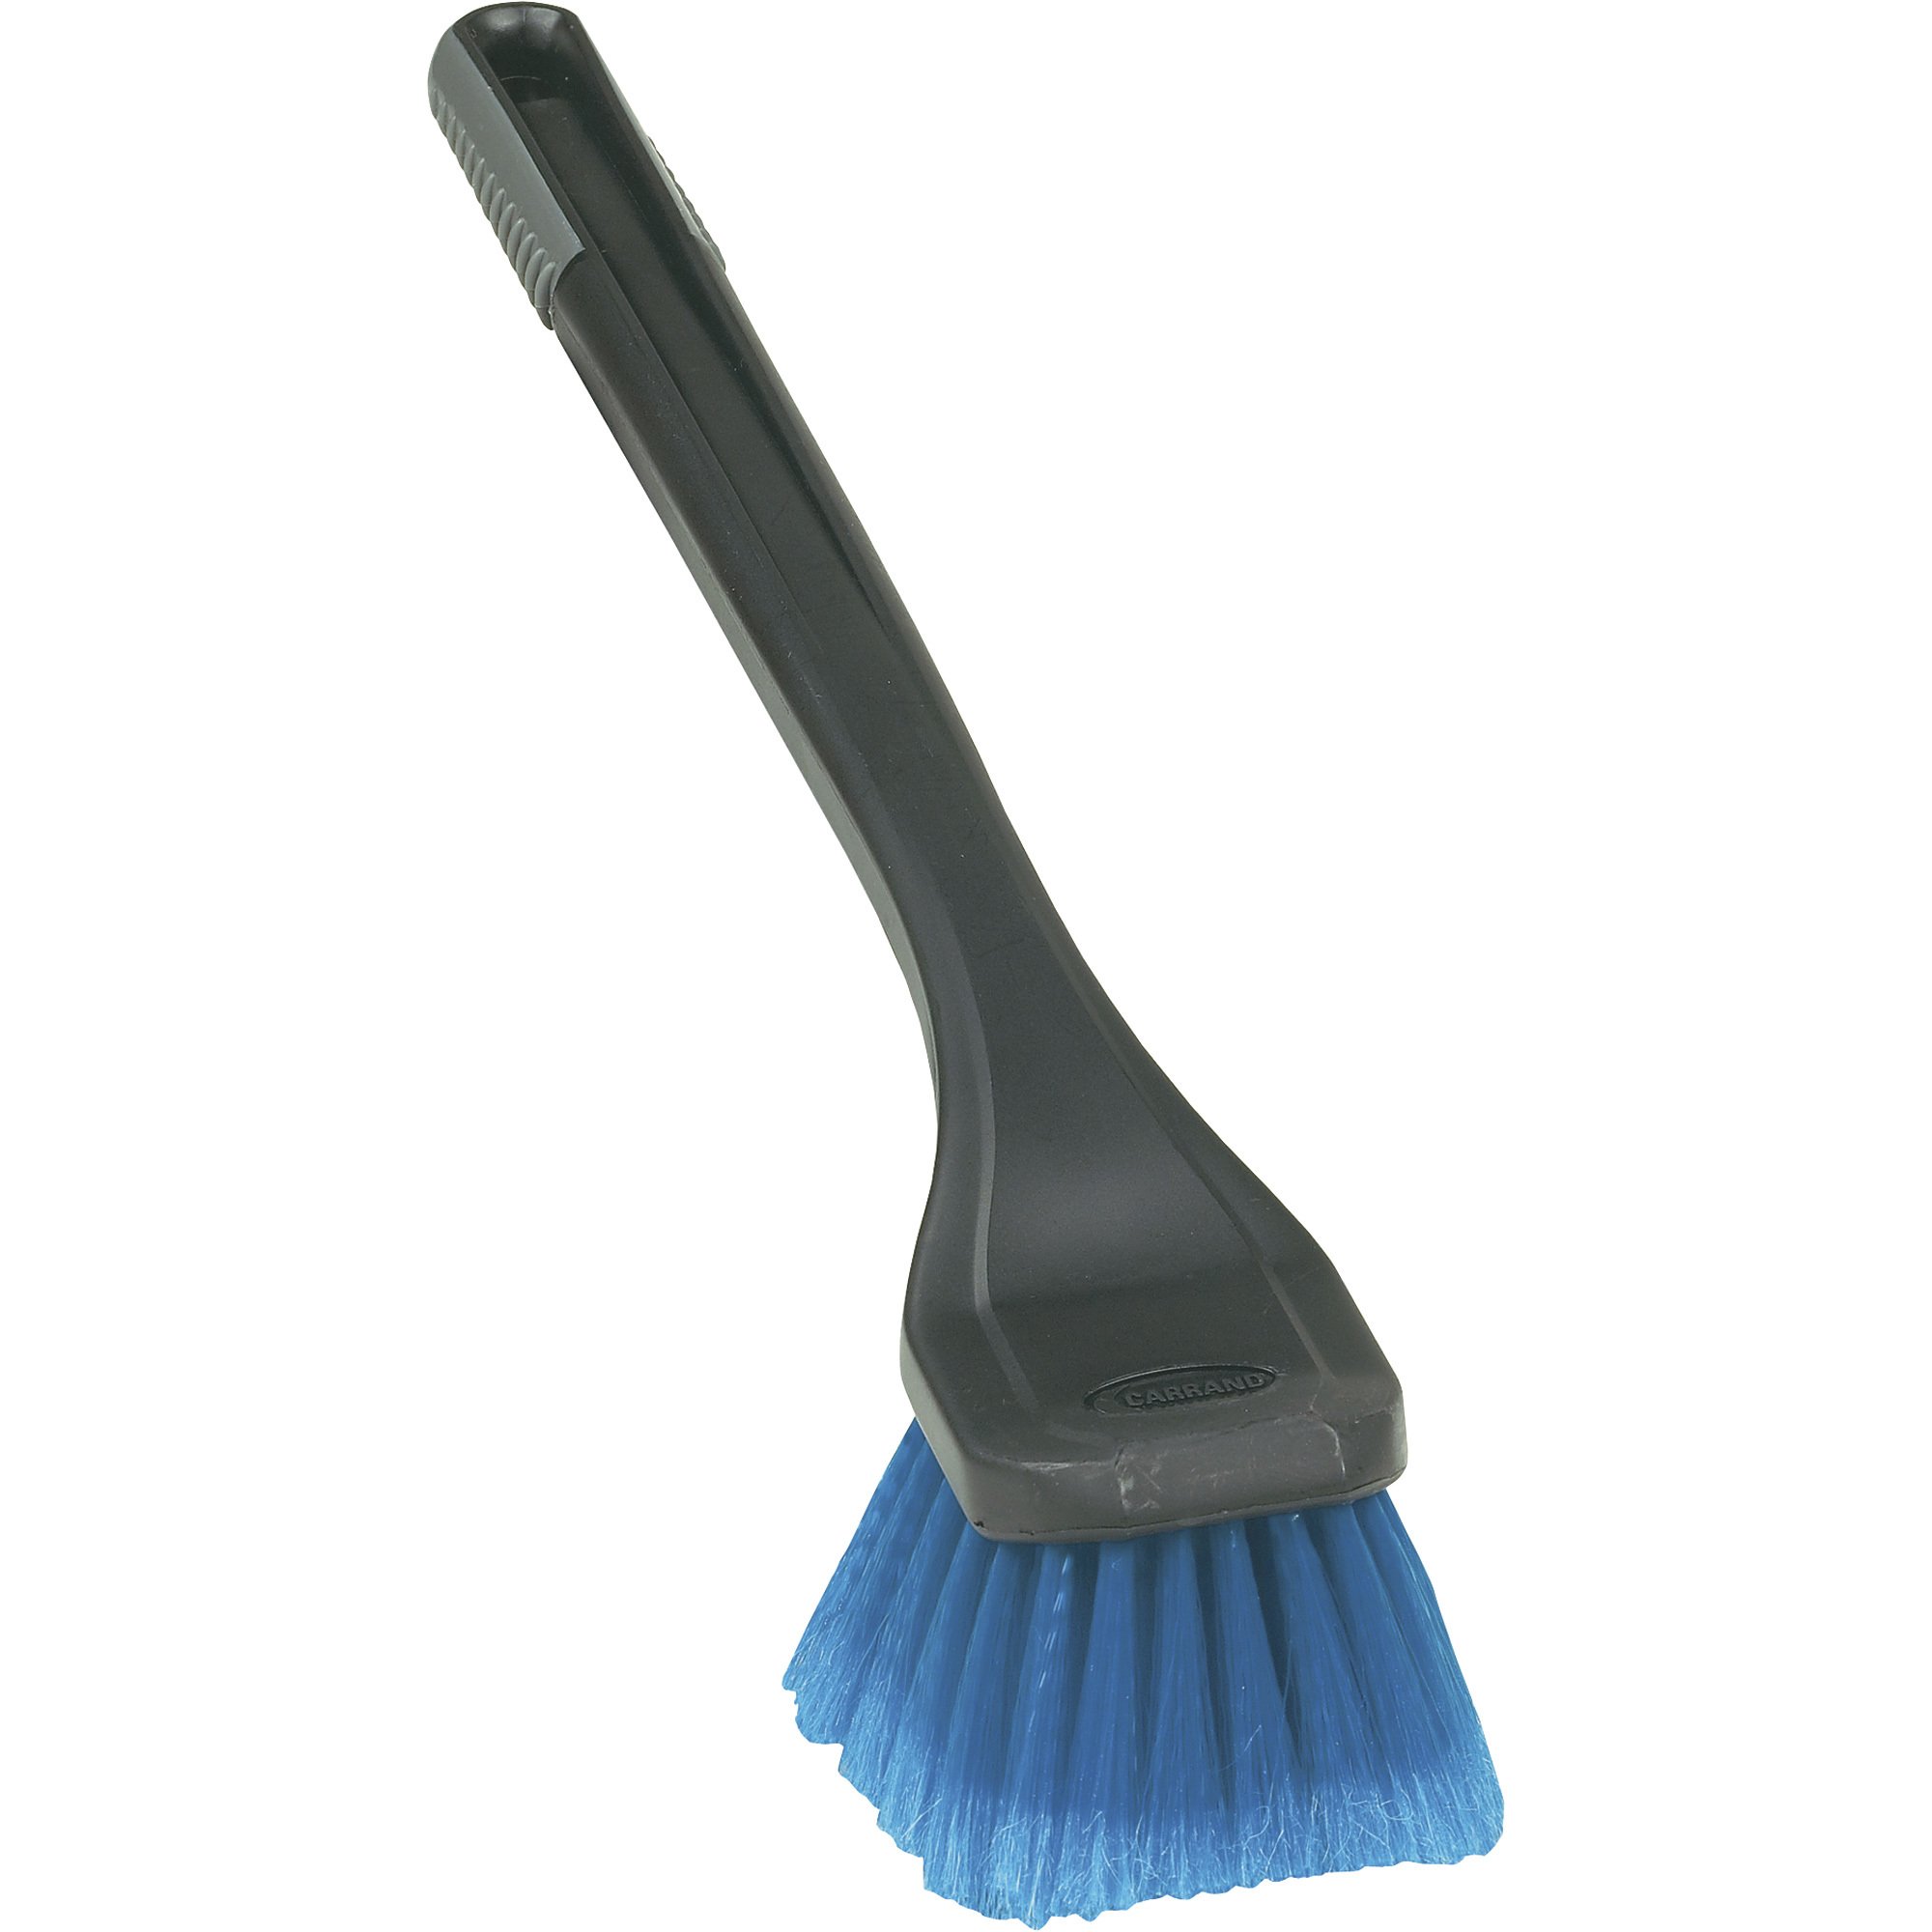 Detailer's Choice Long-Handled Brush, Model# 93039